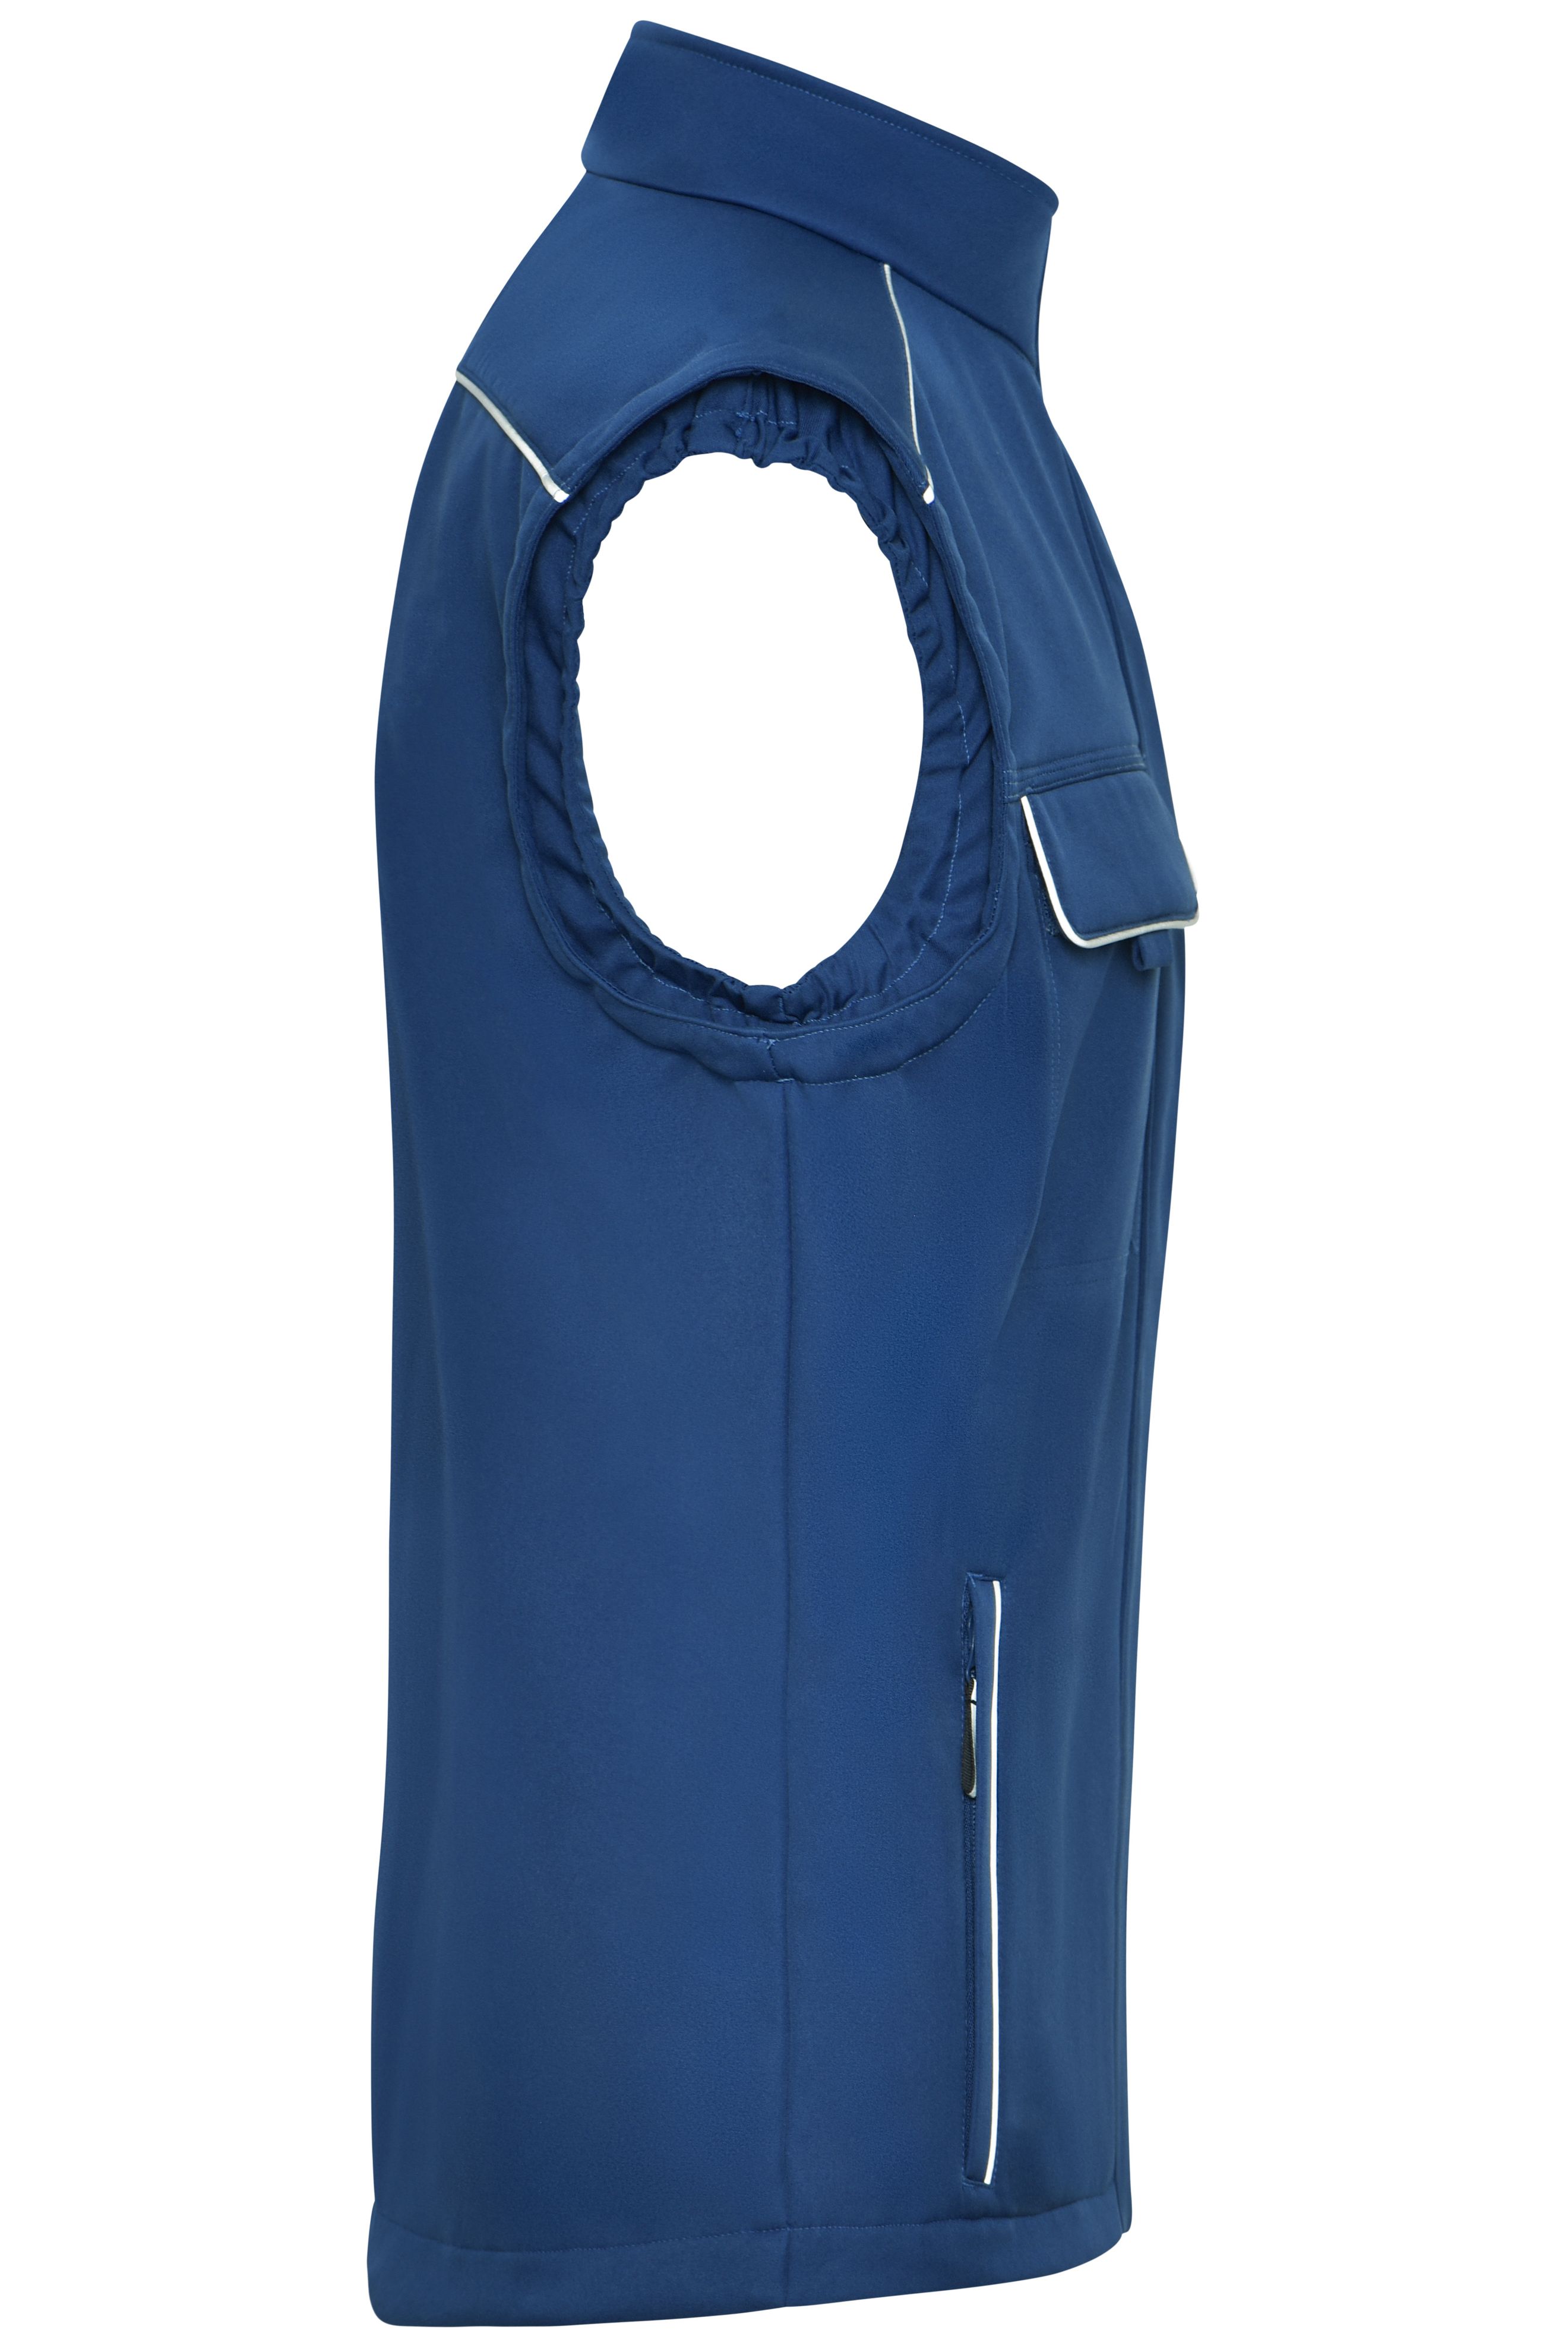 Workwear Softshell Vest - SOLID - JN883 Professionelle Softshellweste im cleanen Look mit hochwertigen Details